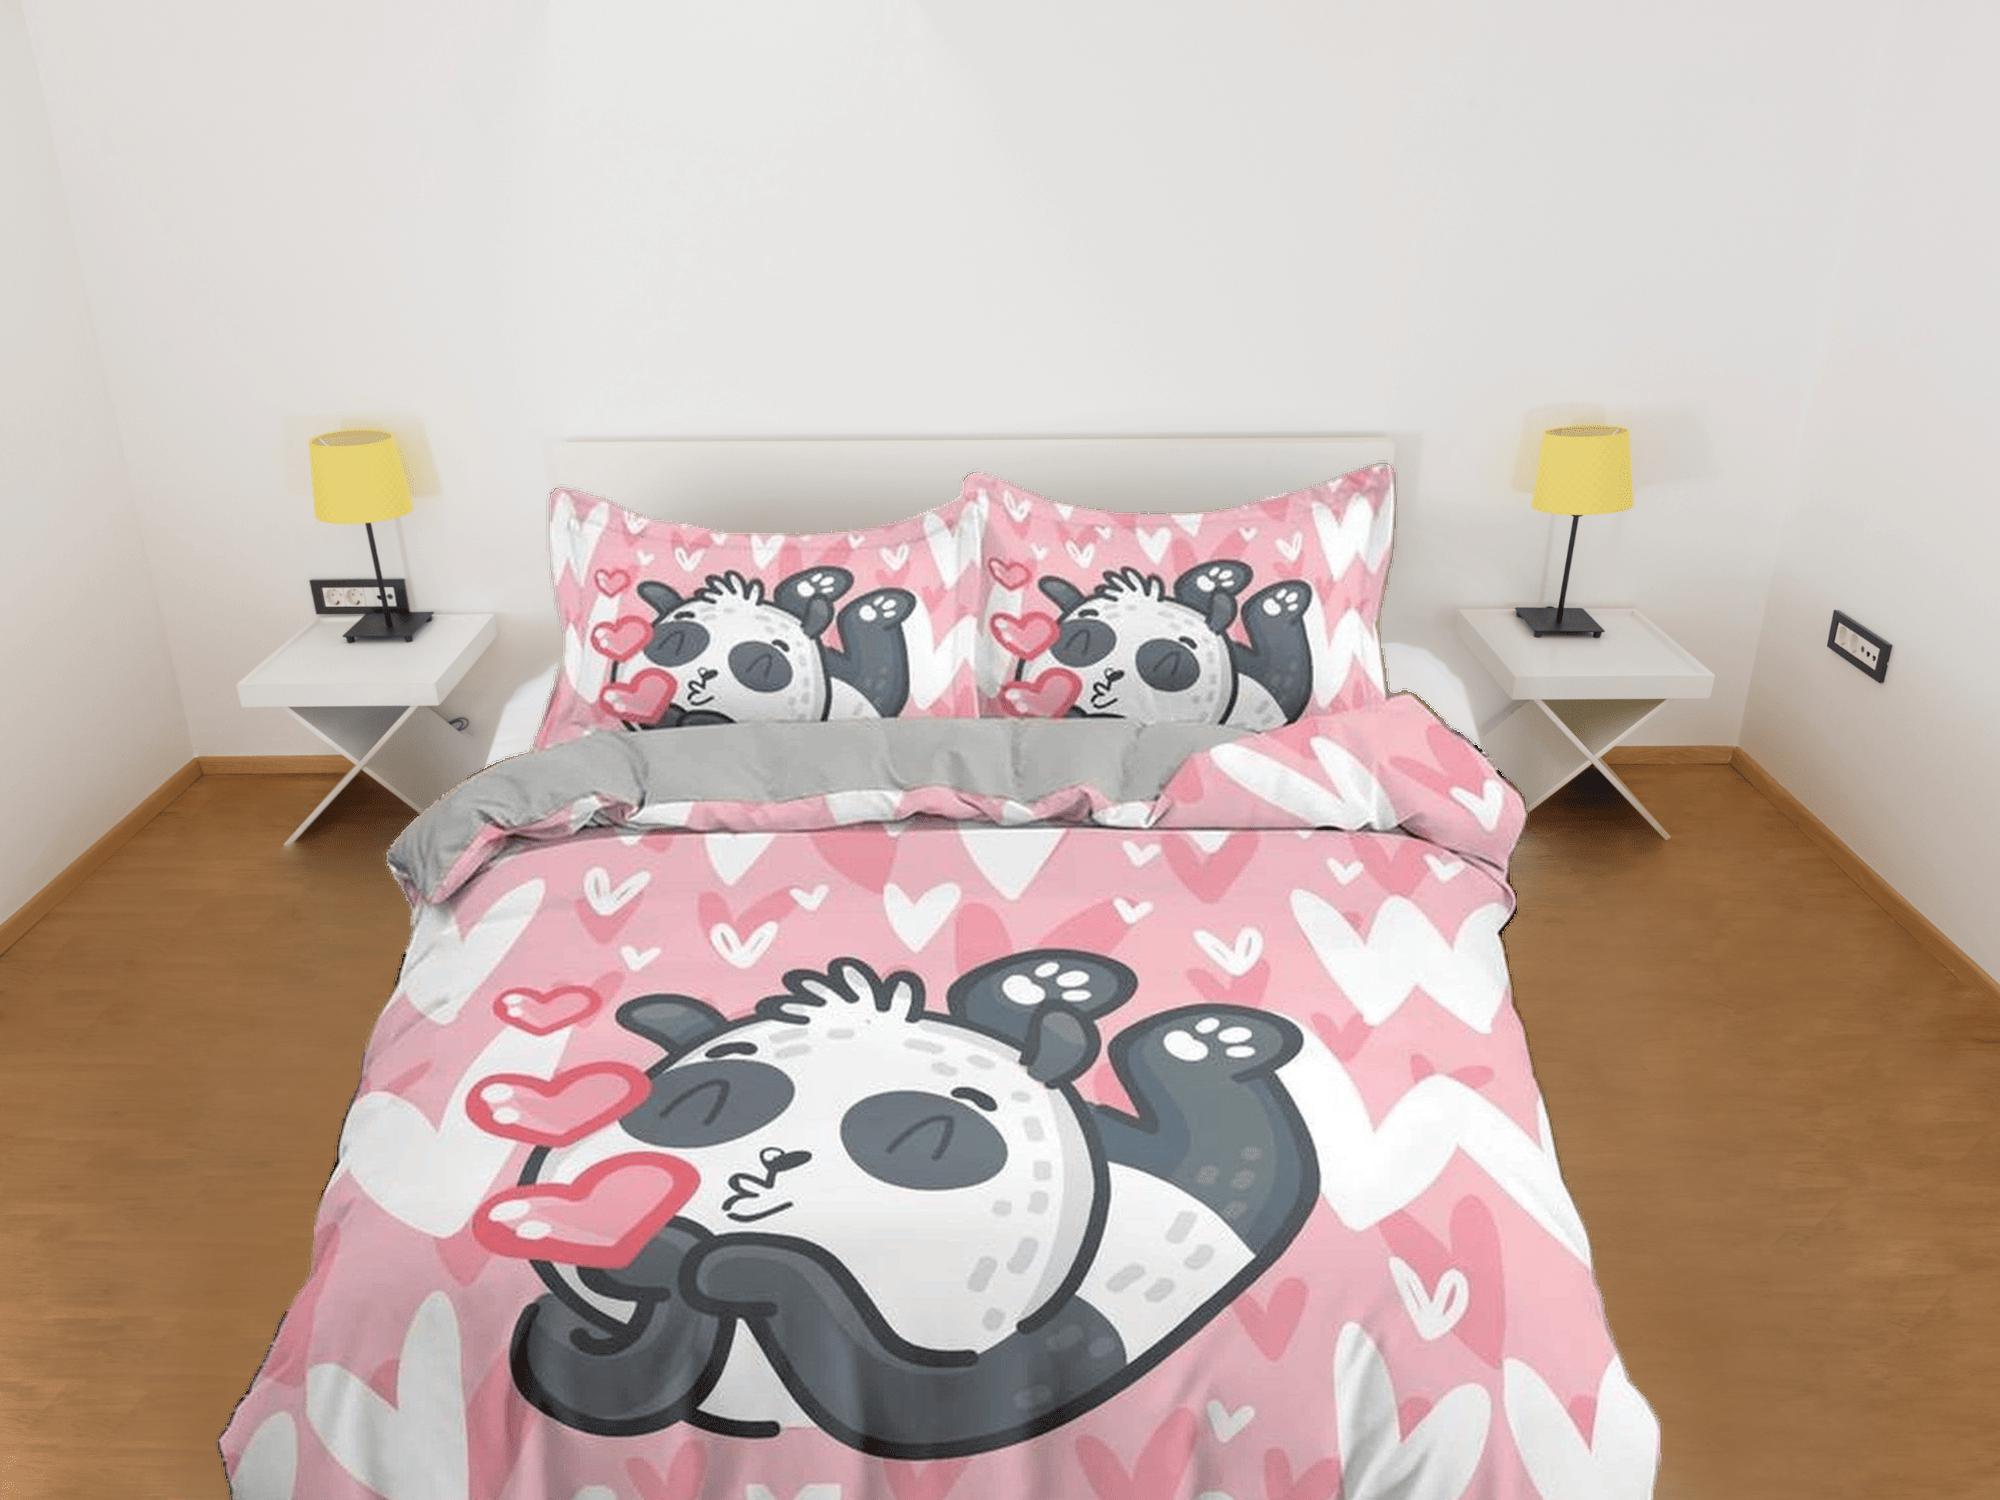 daintyduvet Kiss panda pink duvet cover kids, bedding set full, king, queen, dorm bedding, toddler bedding, aesthetic bedspread, panda lovers gift